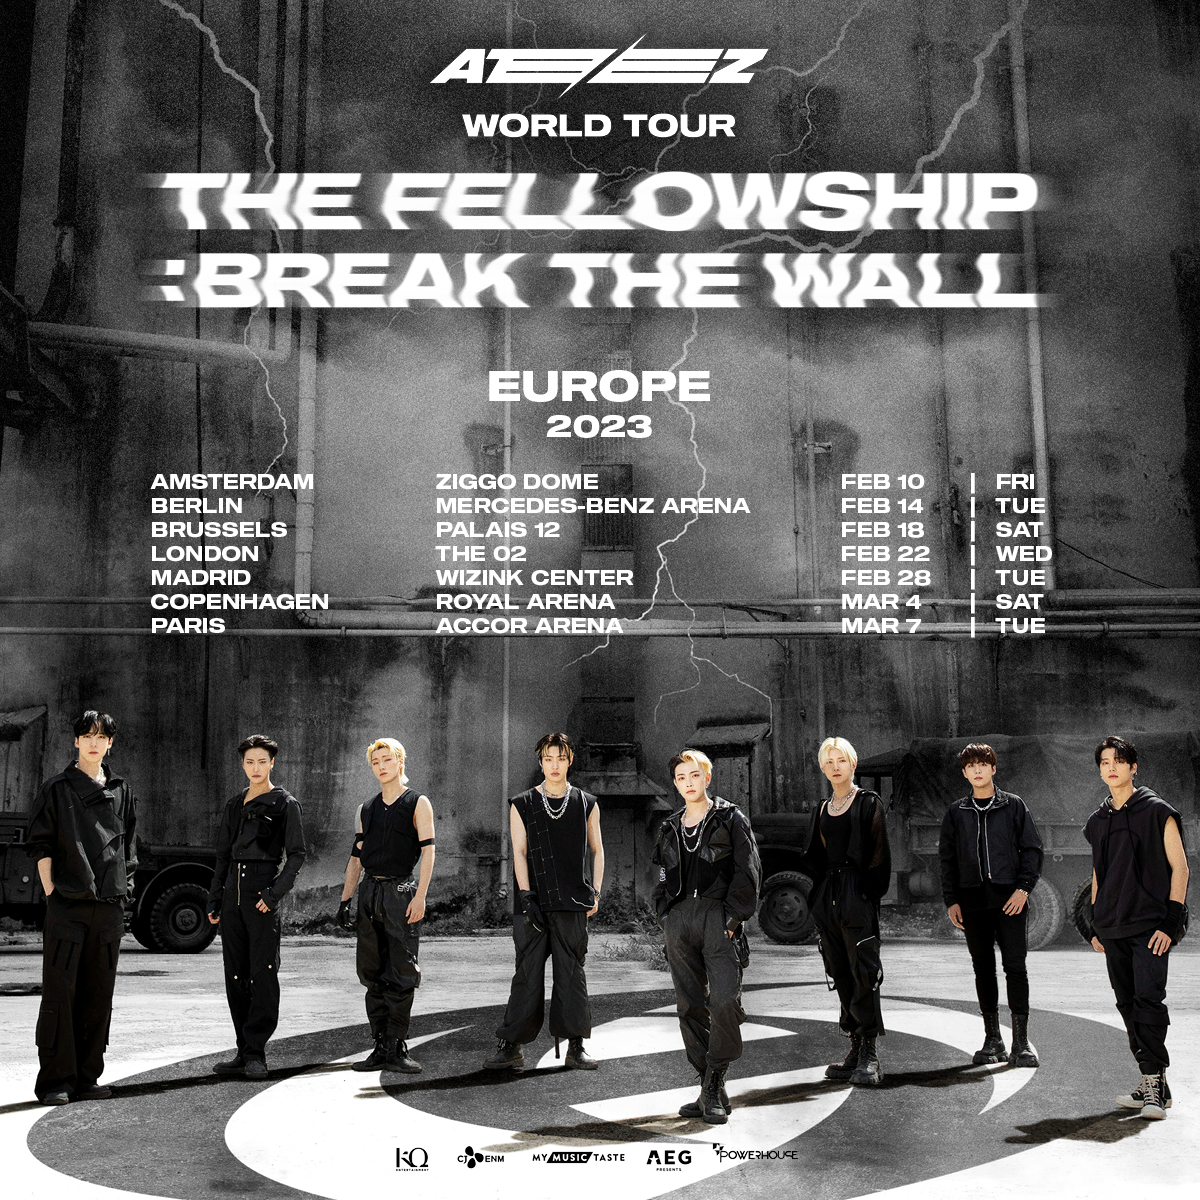 Ciudades y fechas del Tour The Fellowship- Break the wall de ATEEZ